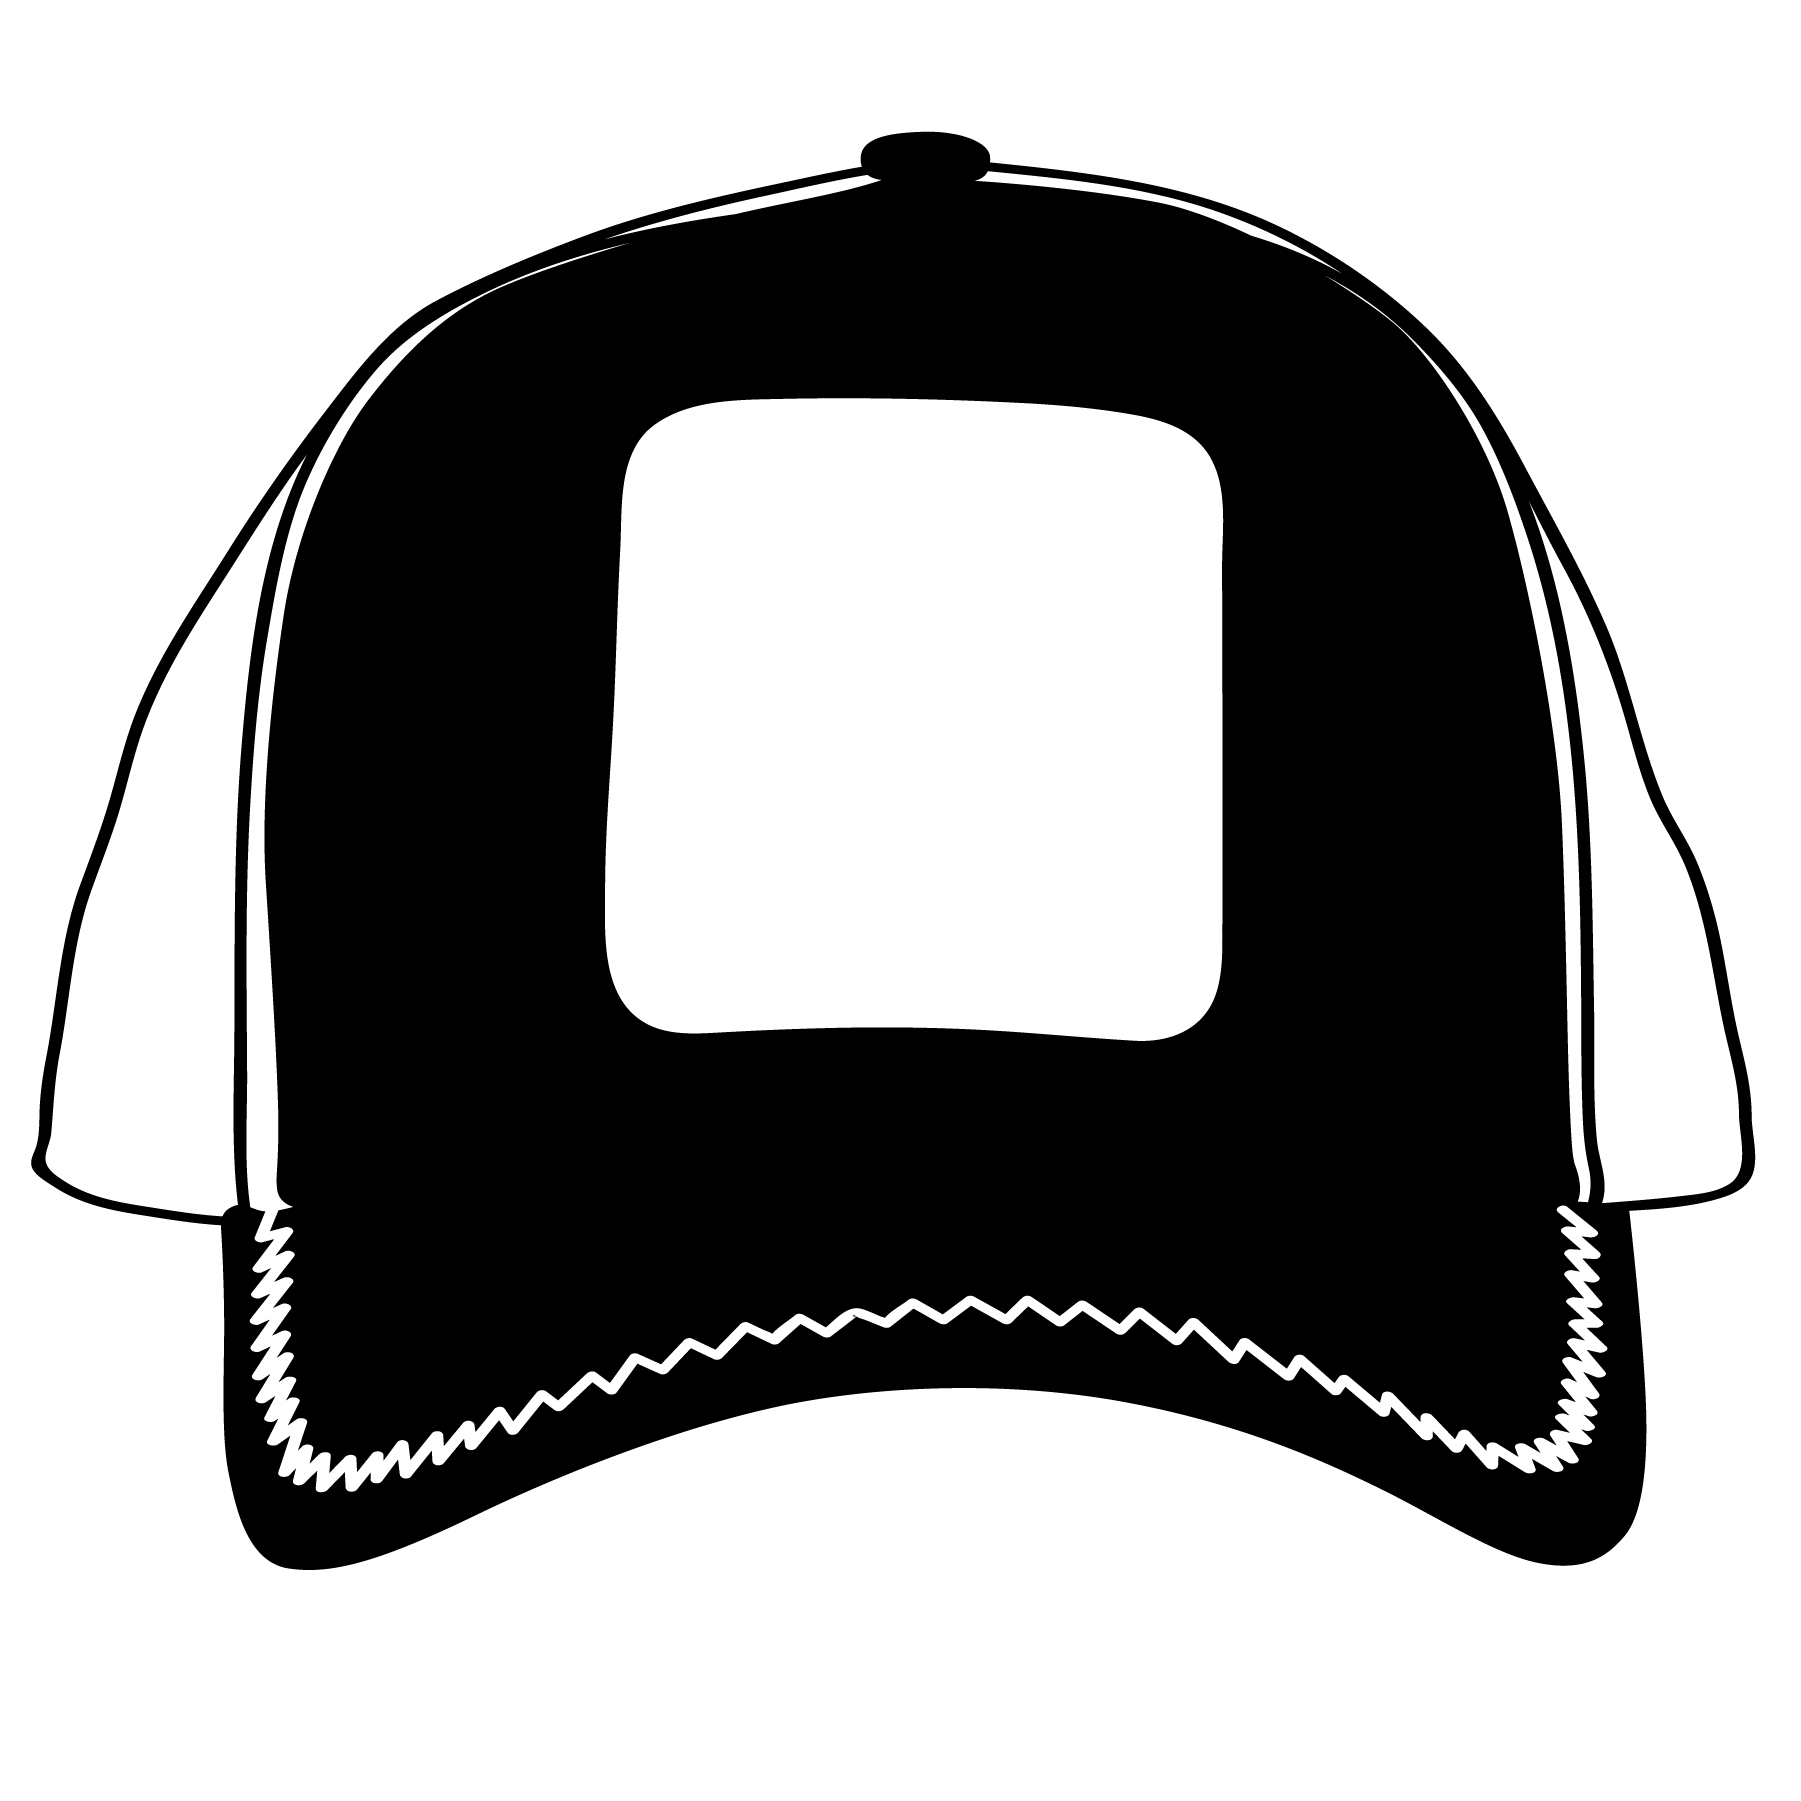 Download baseball cap - Download Free Vectors, Clipart Graphics ...